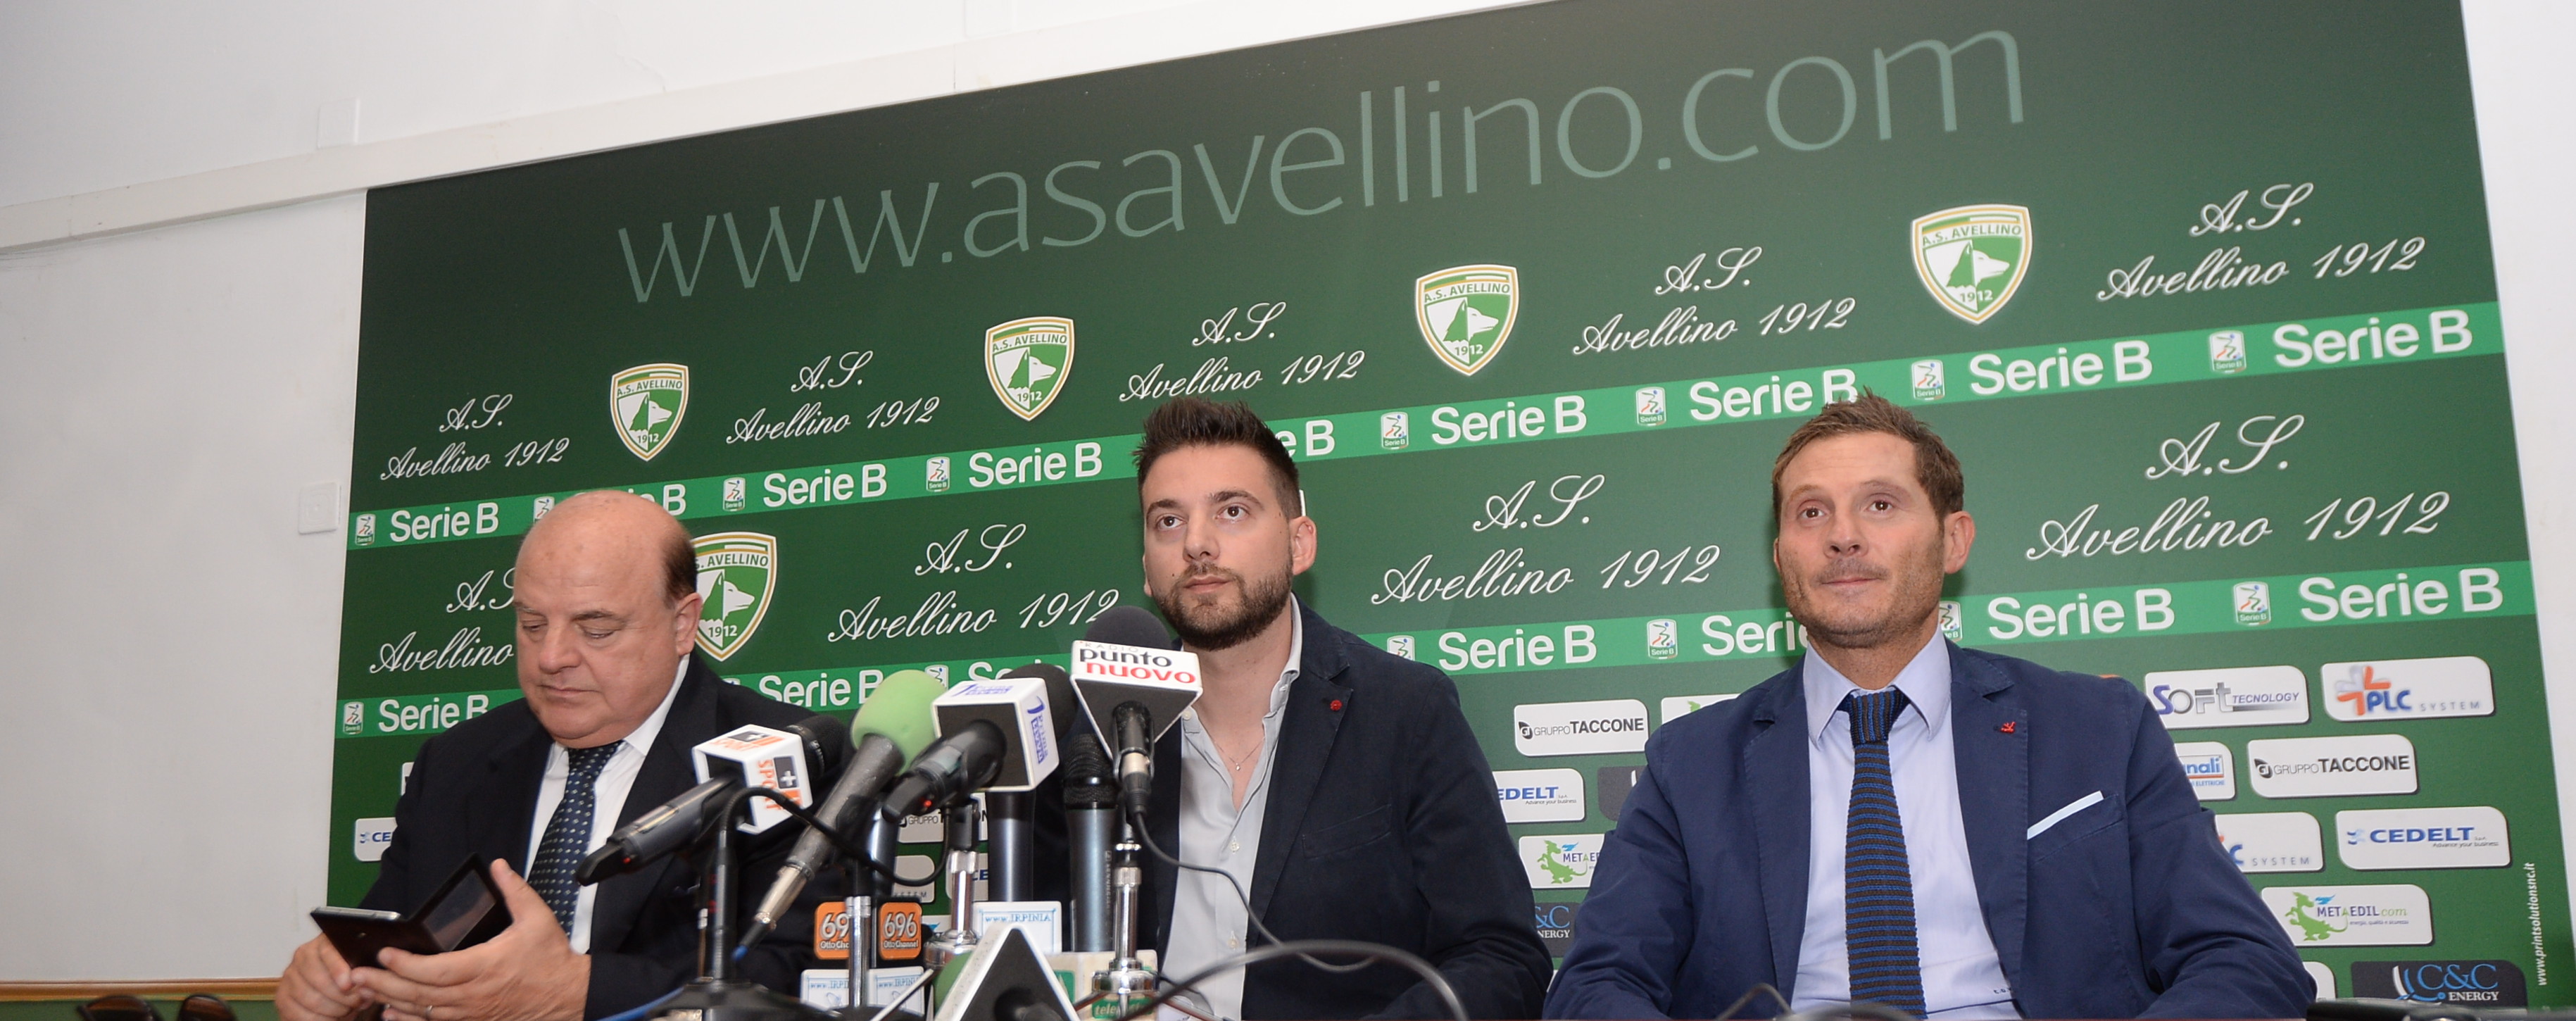 VIDEO/ Avellino Calcio – L’amarezza dei Taccone: “Rastelli una delusione, ma guardiamo avanti”